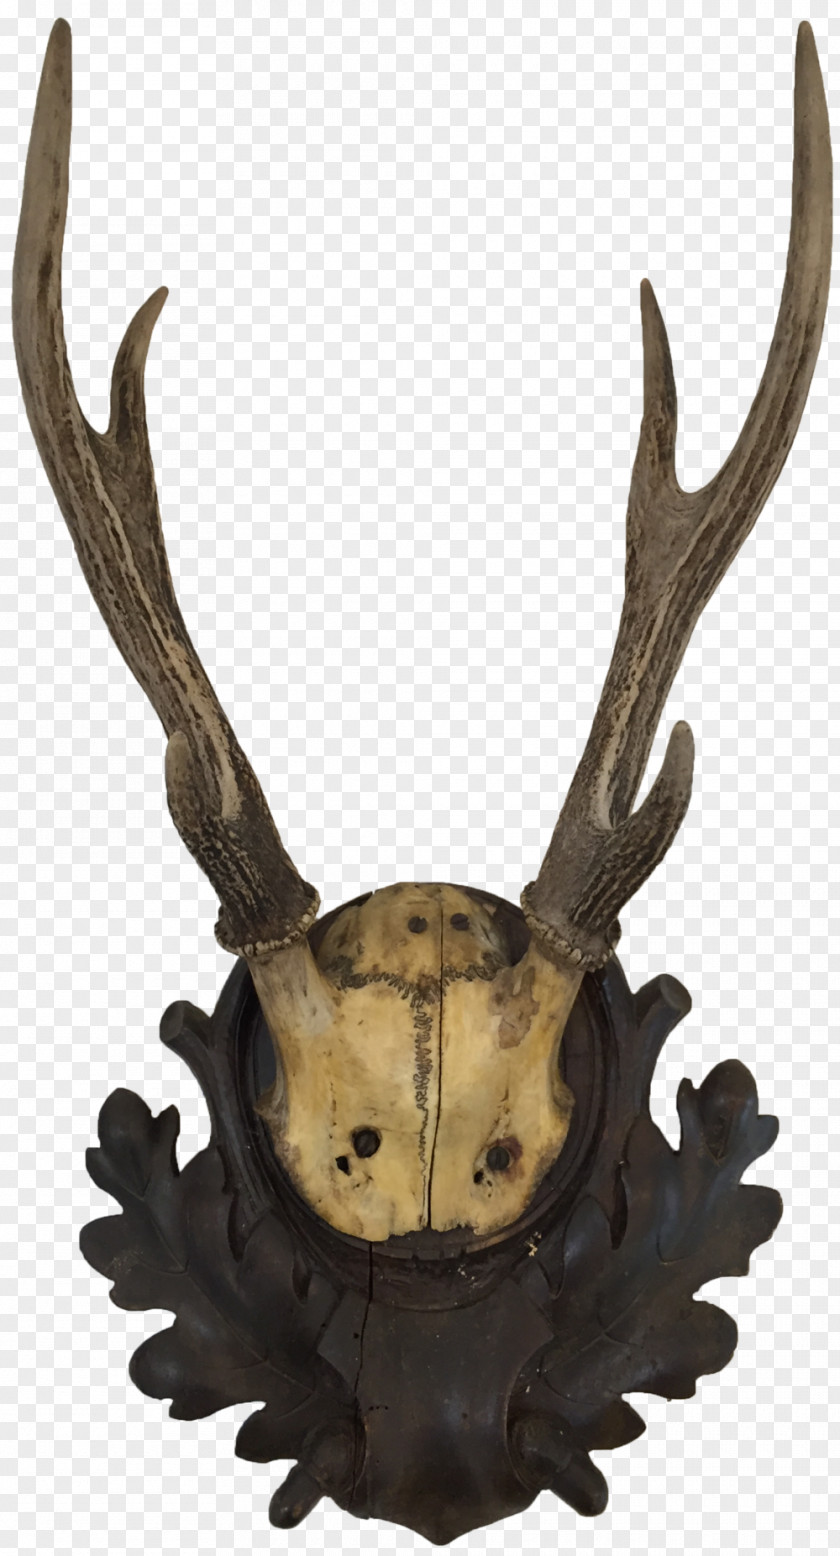 Antler Deer Horn Trophy Hunting Animal Product PNG